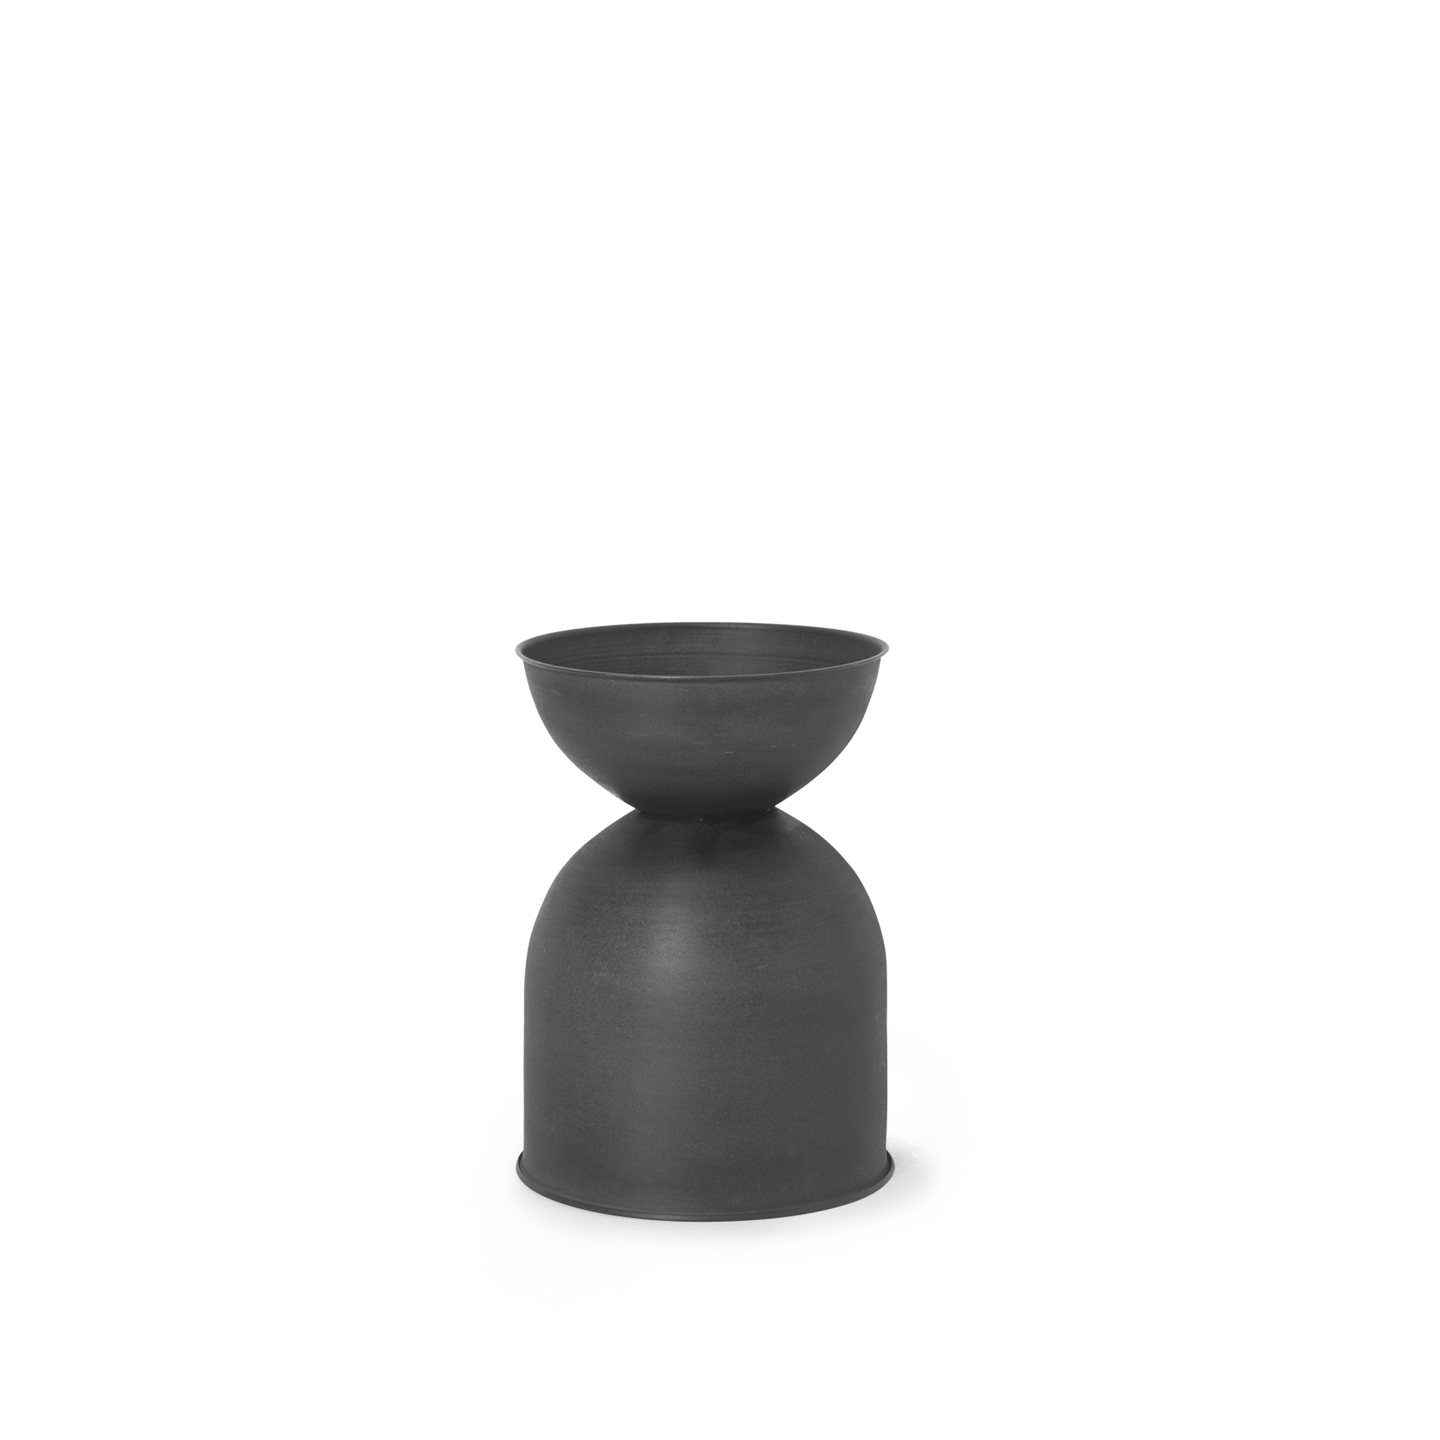 Ferm - Hourglass Pot - Small - Black/D. GreyFermFerm - Marz DesignsFerm Living